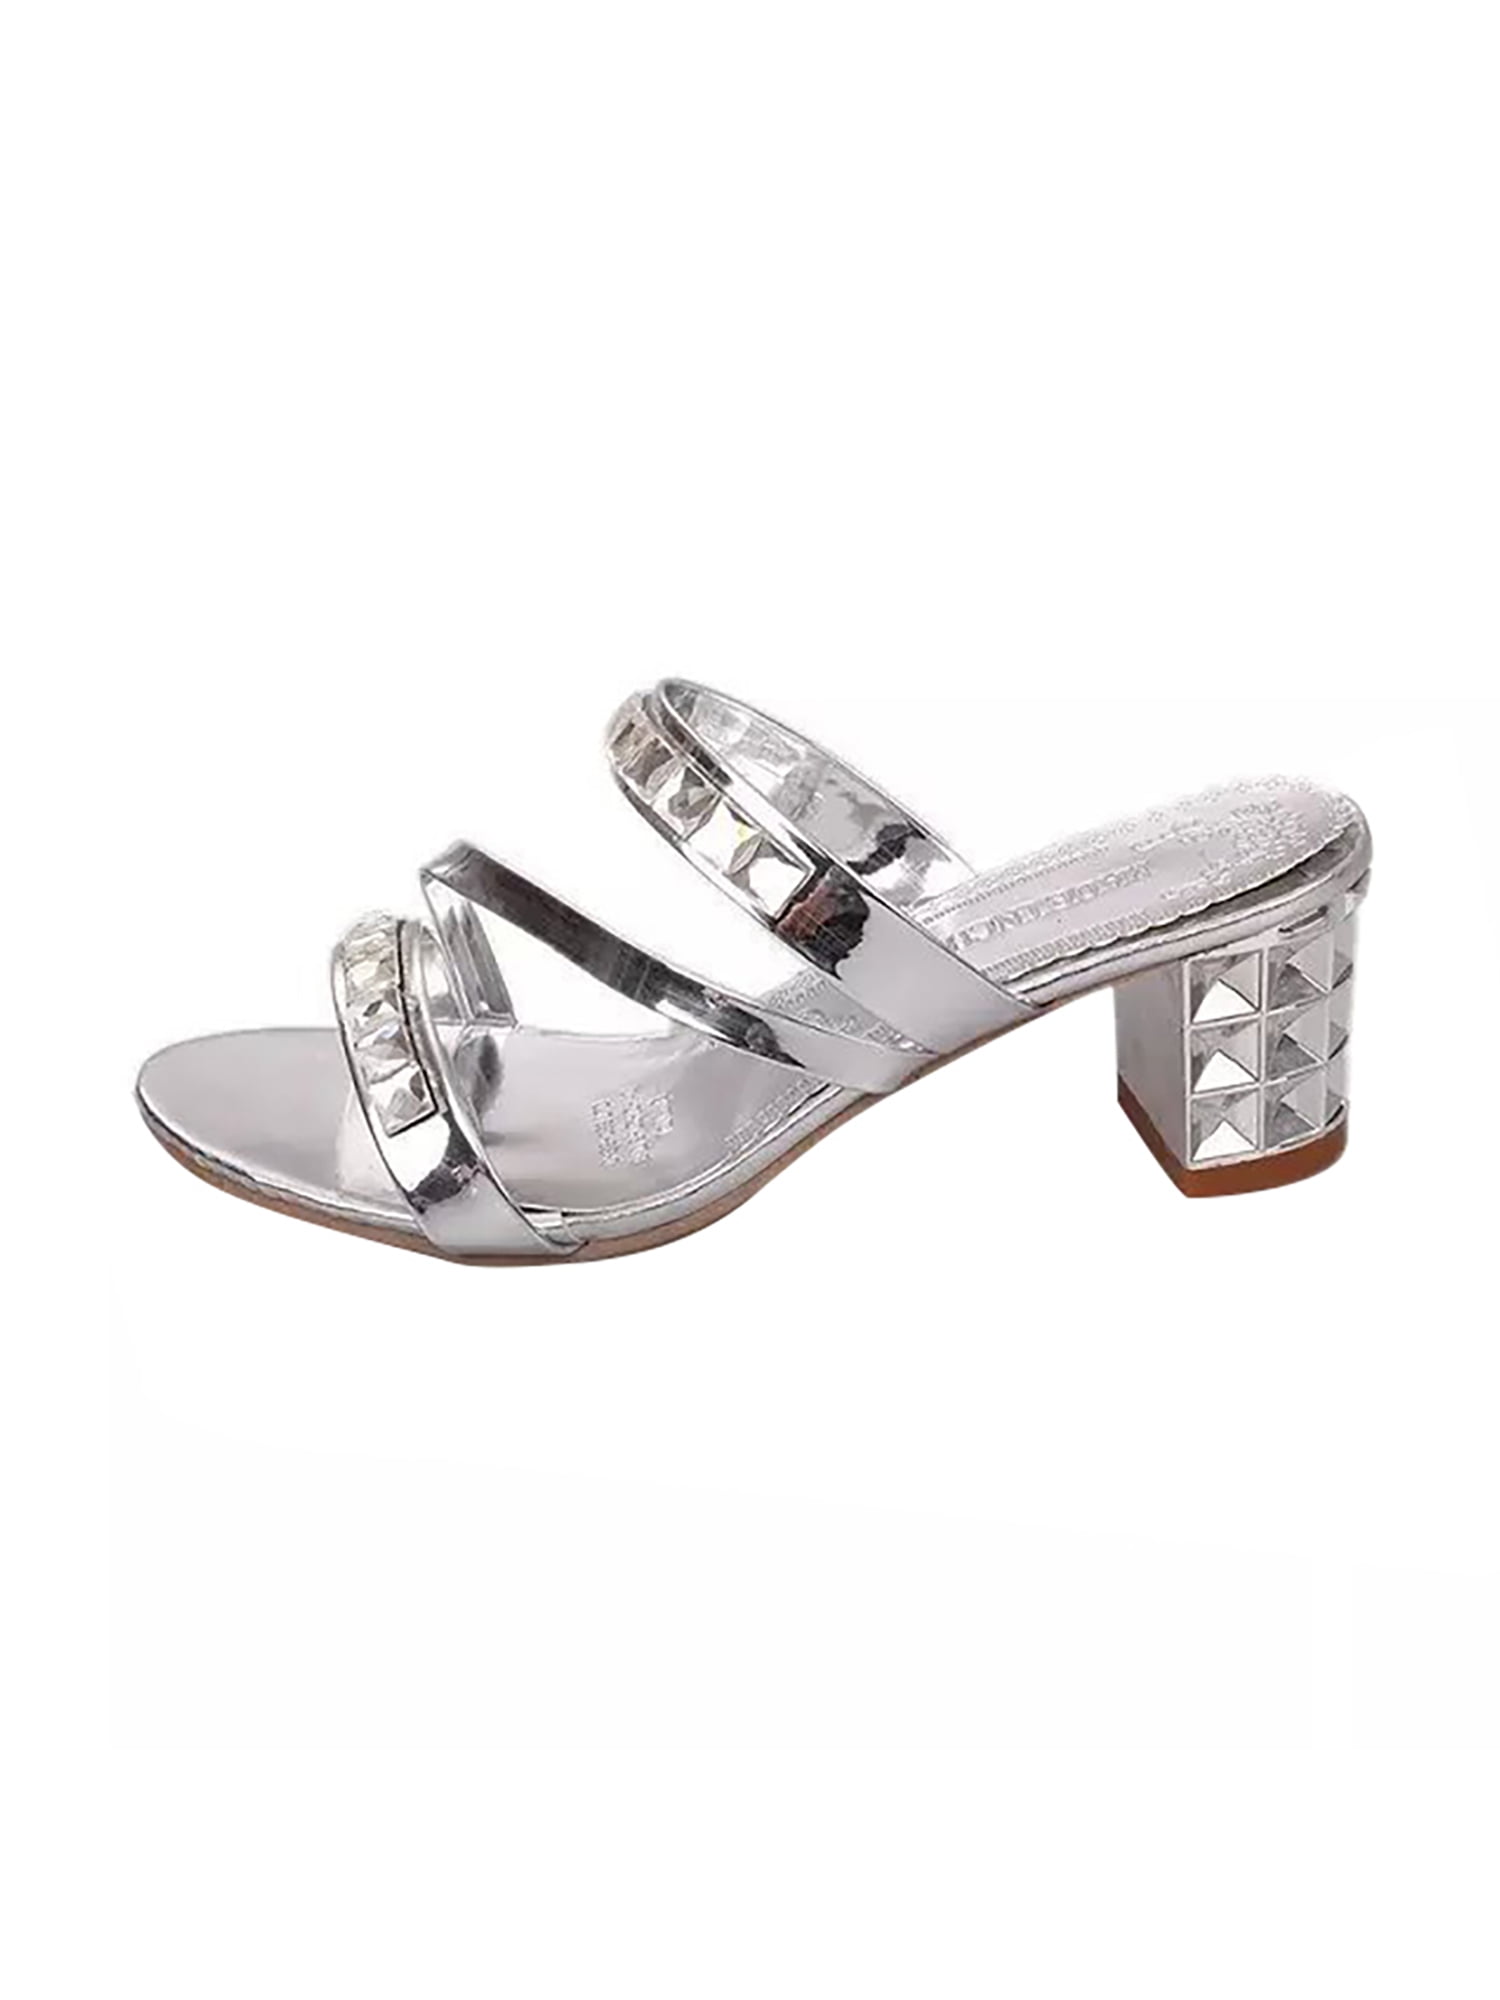 Womens Flat Sandal Slip On Slider Ladies Casual Formal Smart Mule Shoes 3-8